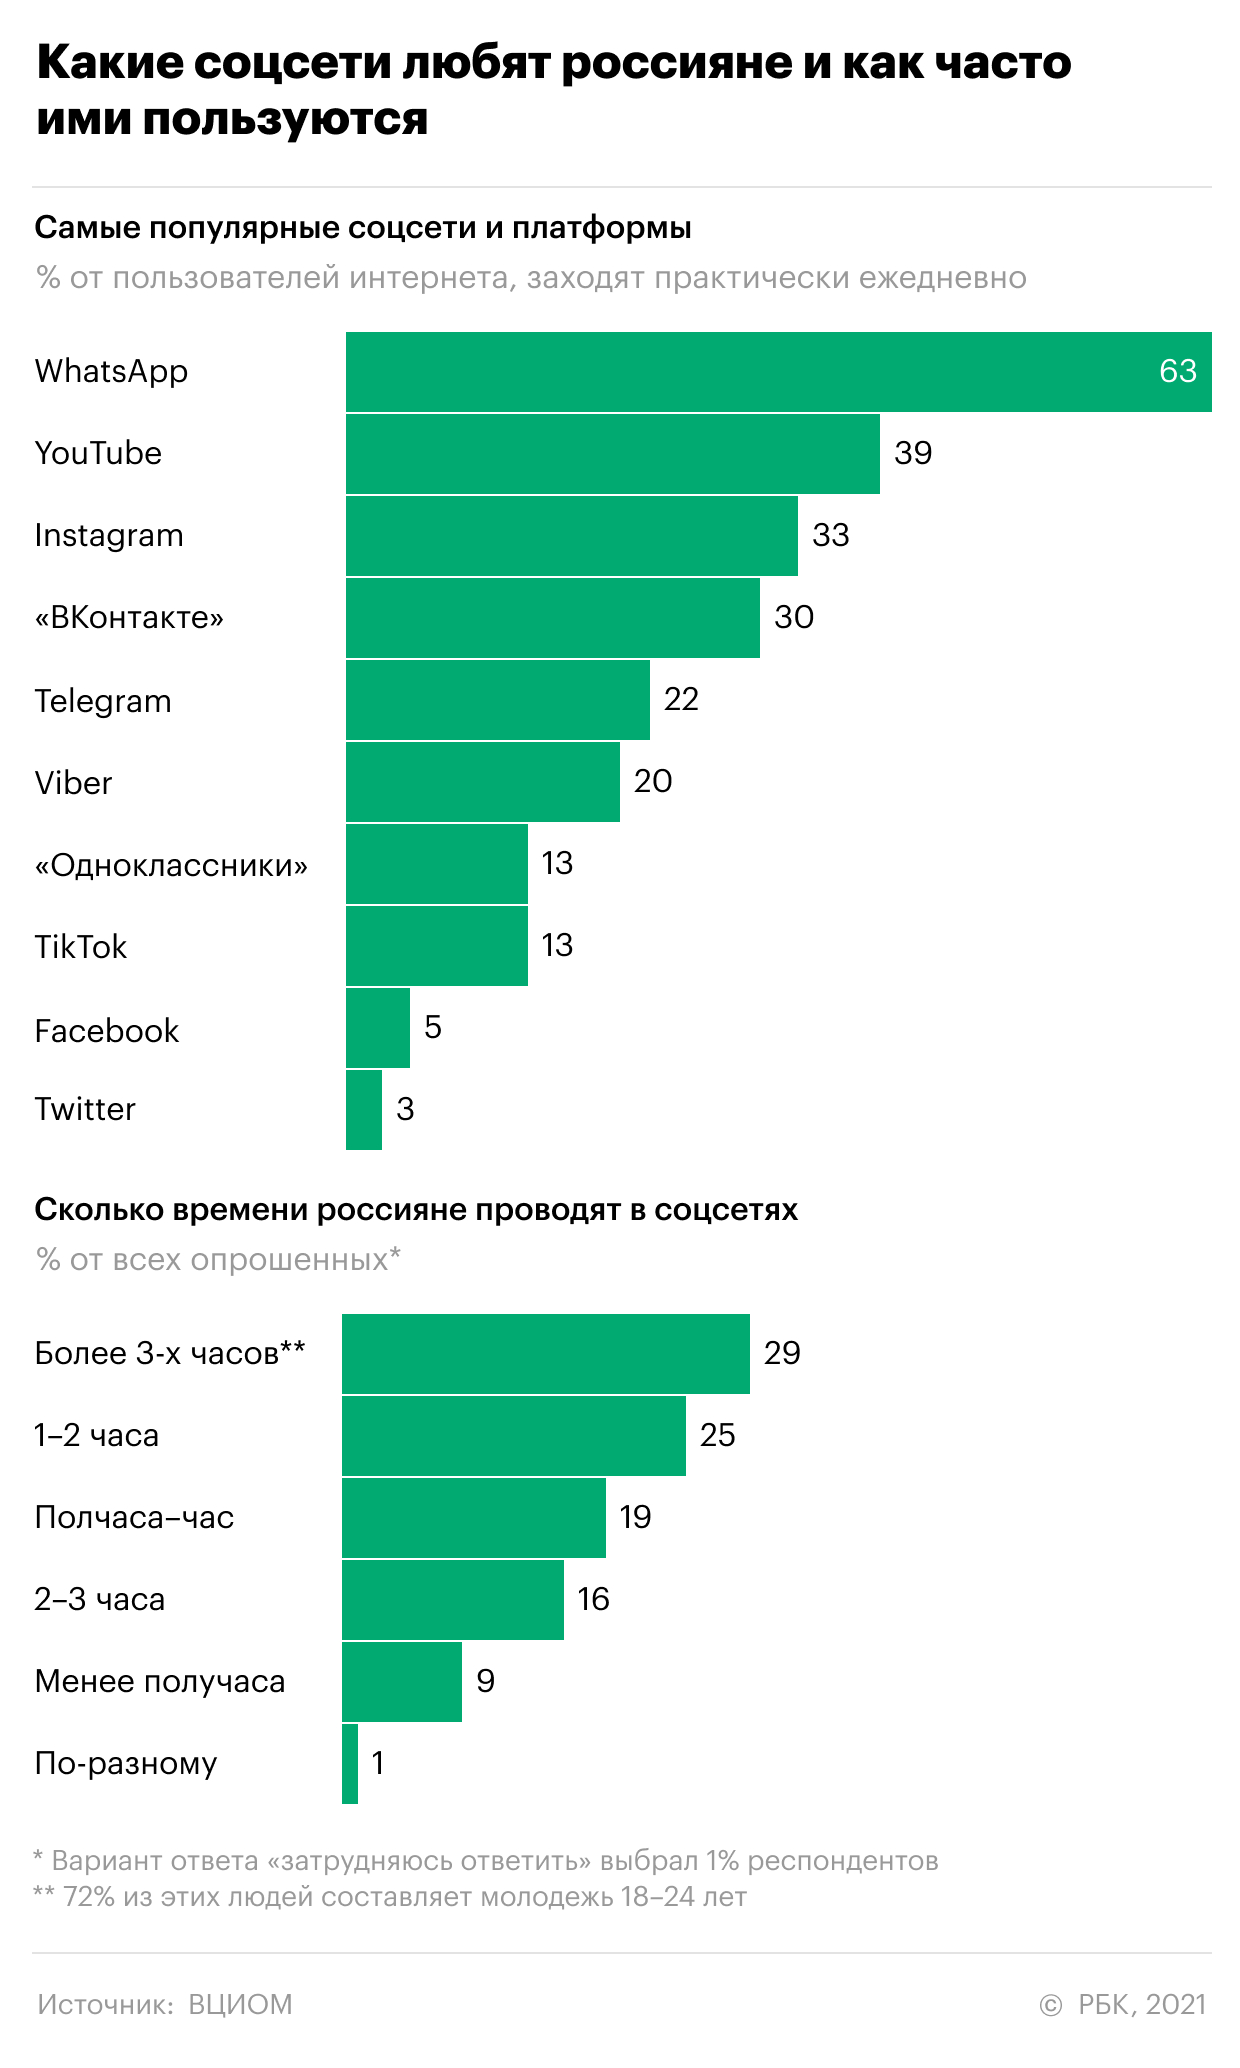 Где и как россияне узнают новости. Инфографика